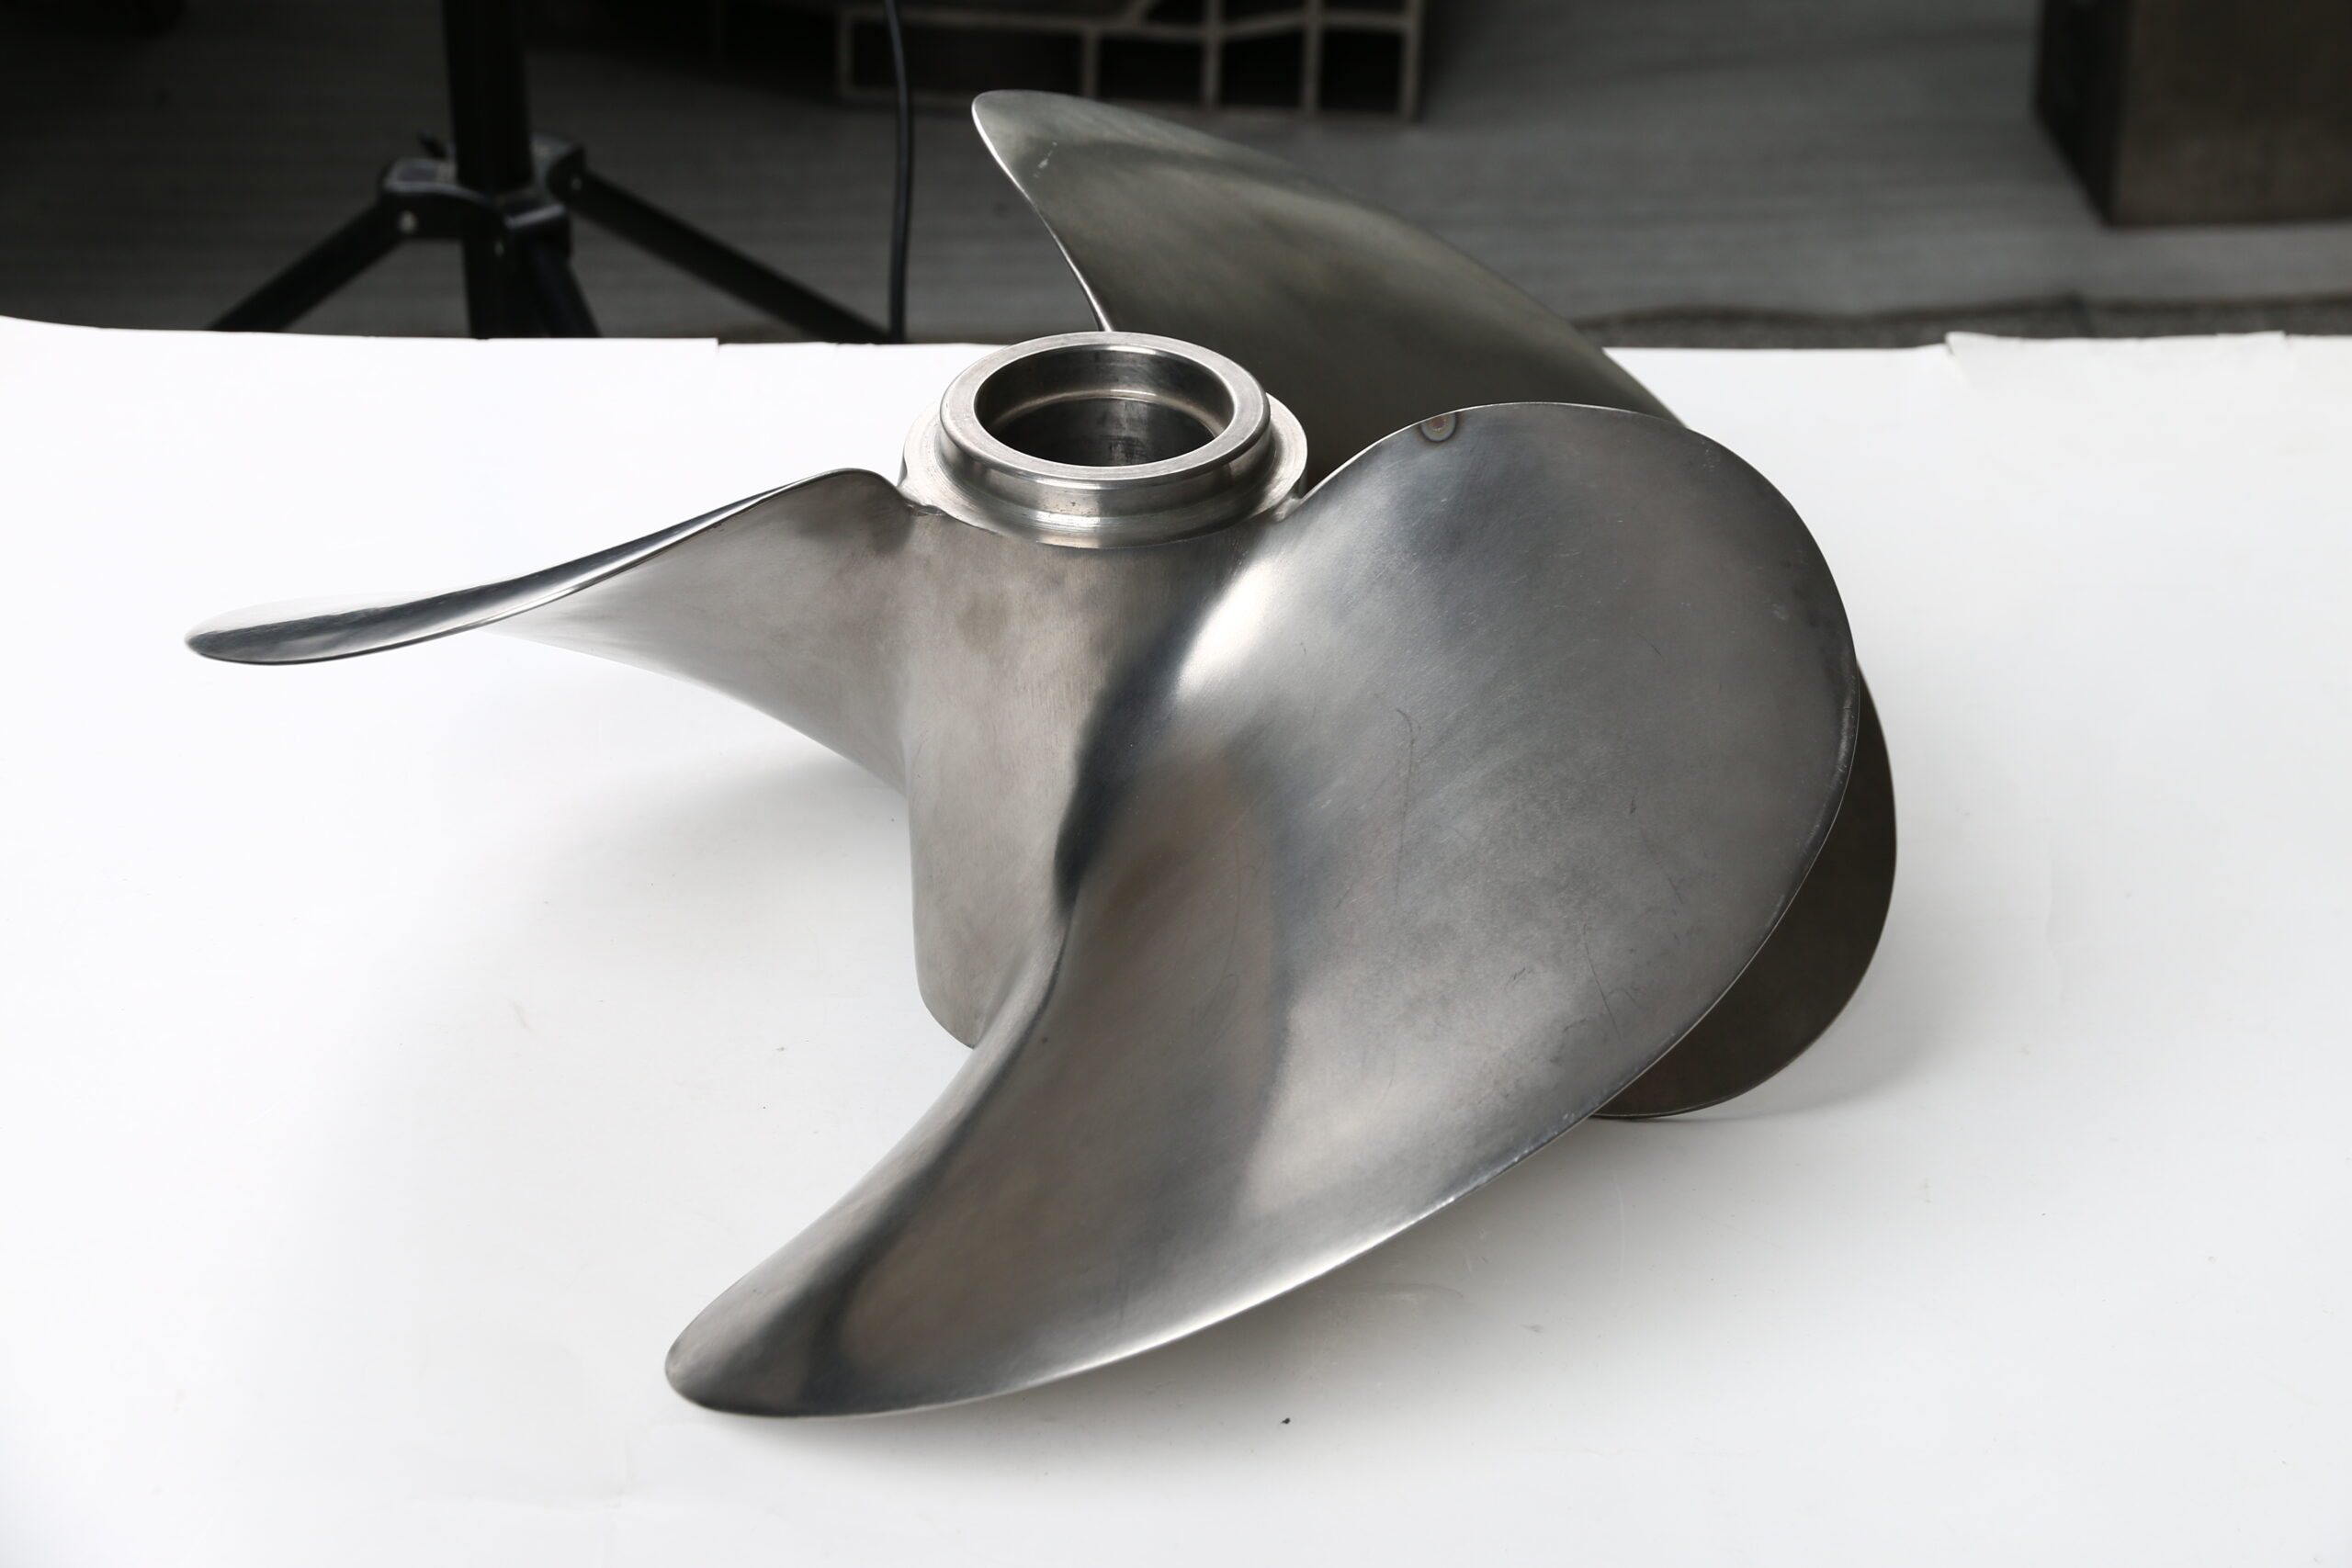 Titanium propeller casting